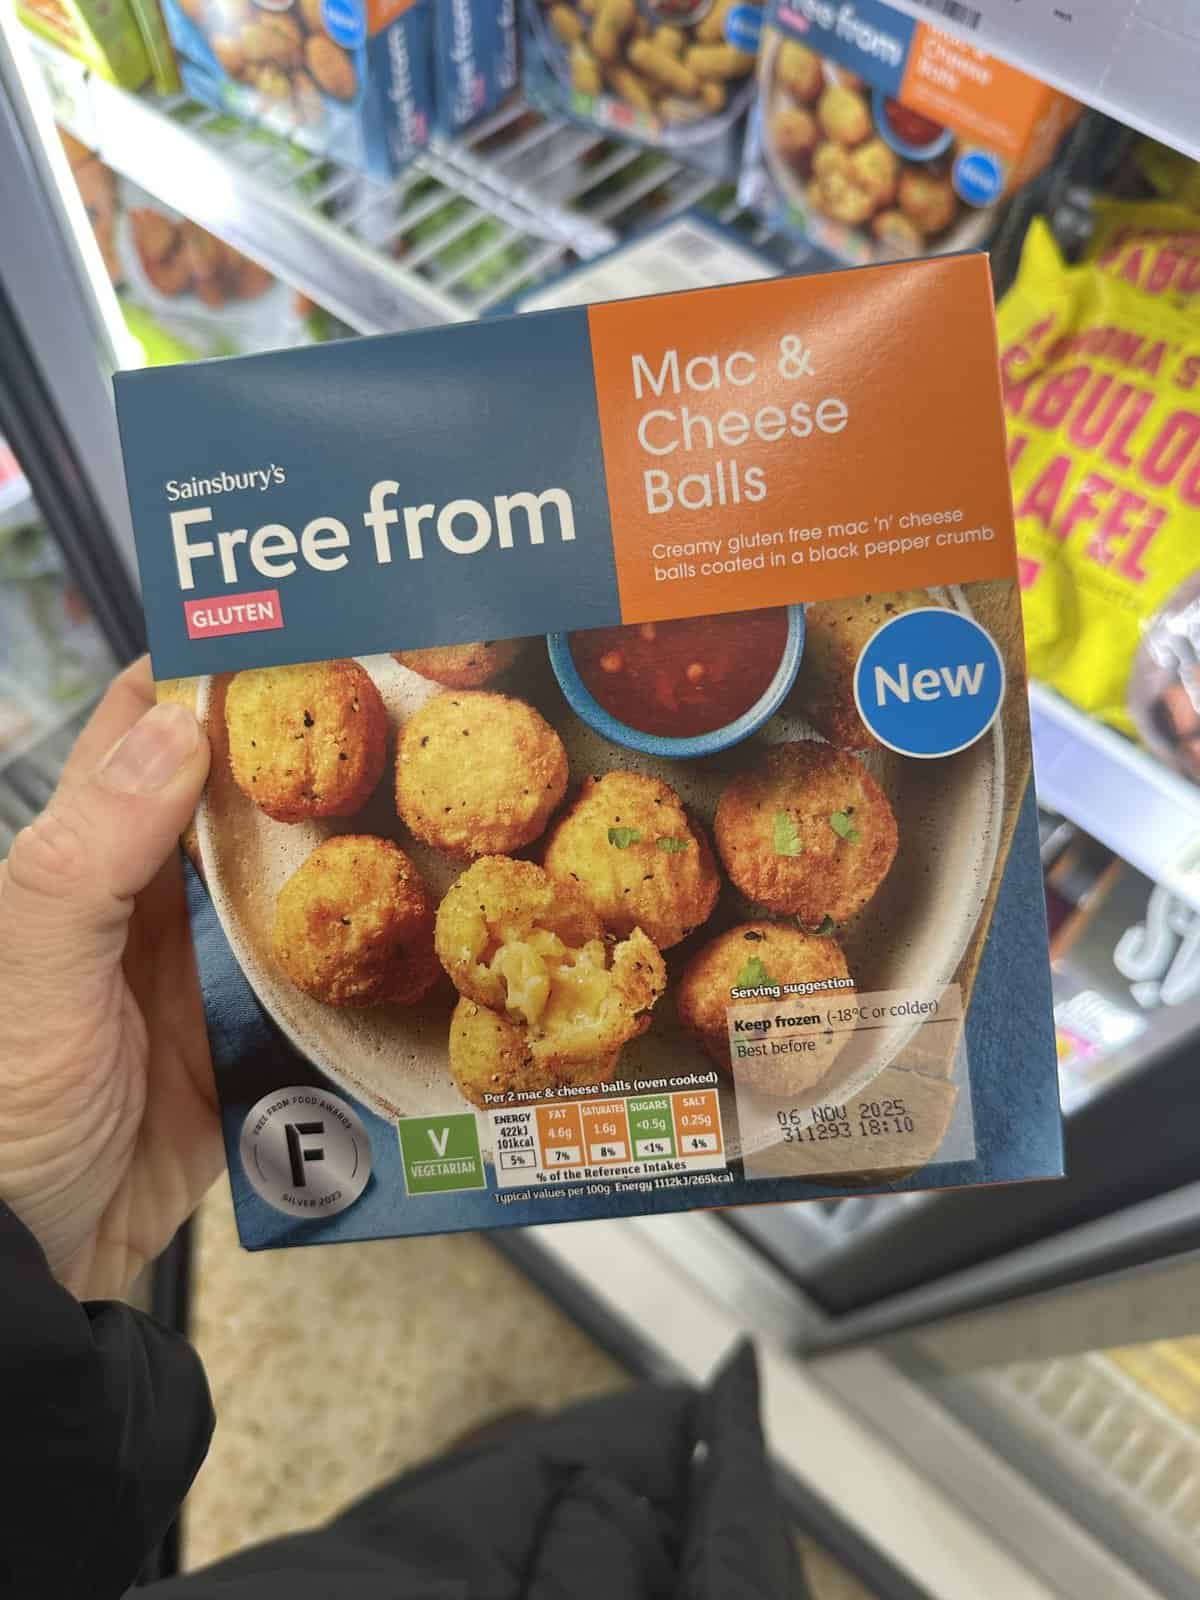 Sainsbury's Gluten Free Mac and Cheese Balls 